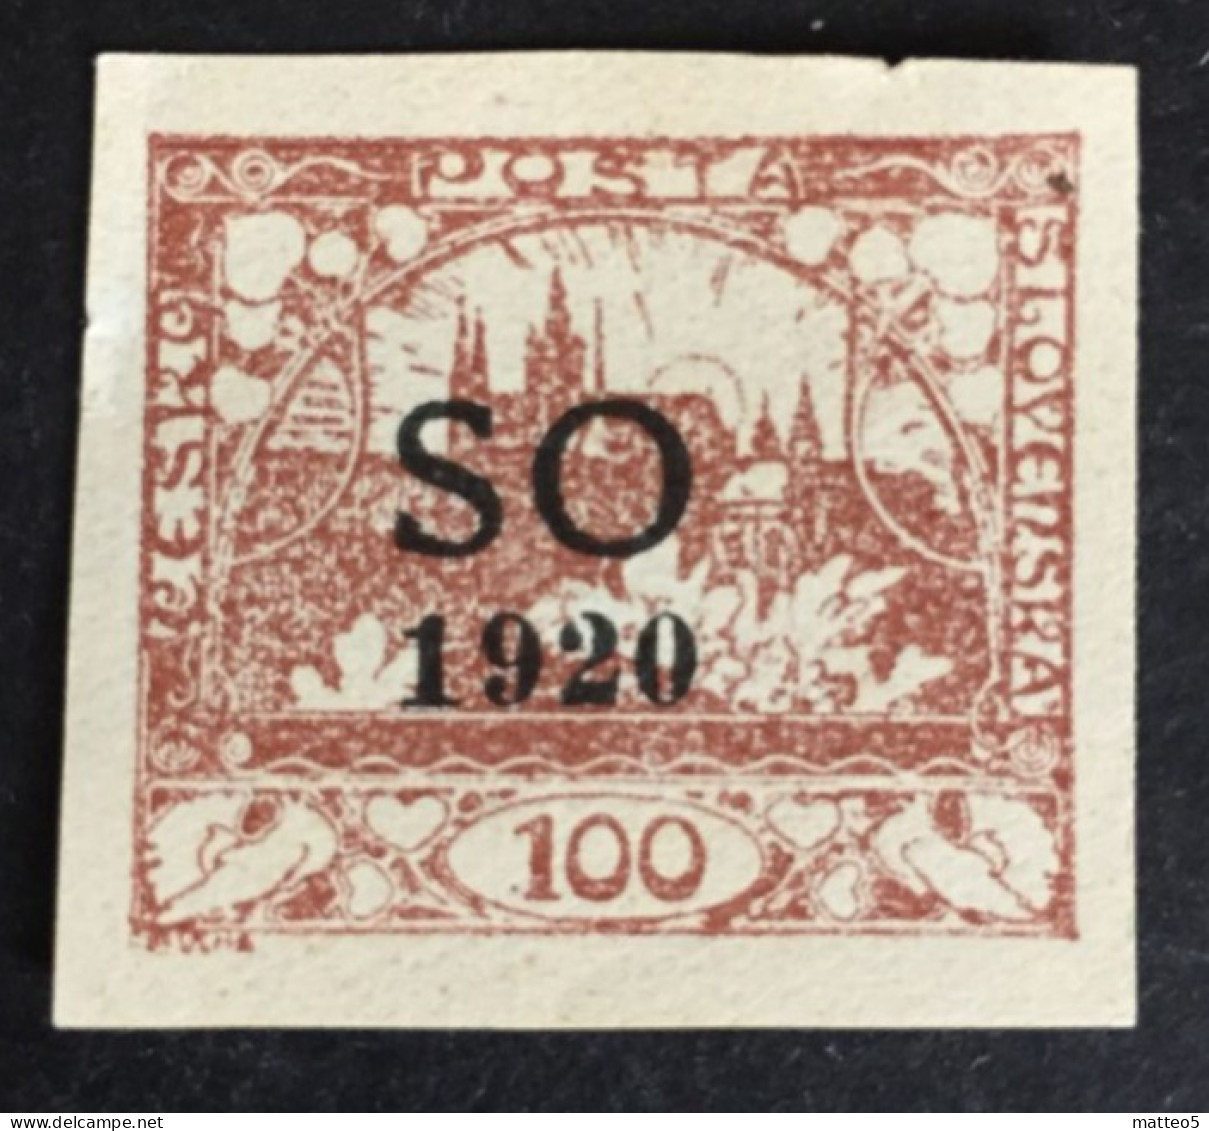 1920 Poland Eastern Silesia Czechoslovakia - Hradcany At Prague Overprint SO 100 - Unused ( Mint Hinged) - Silésie